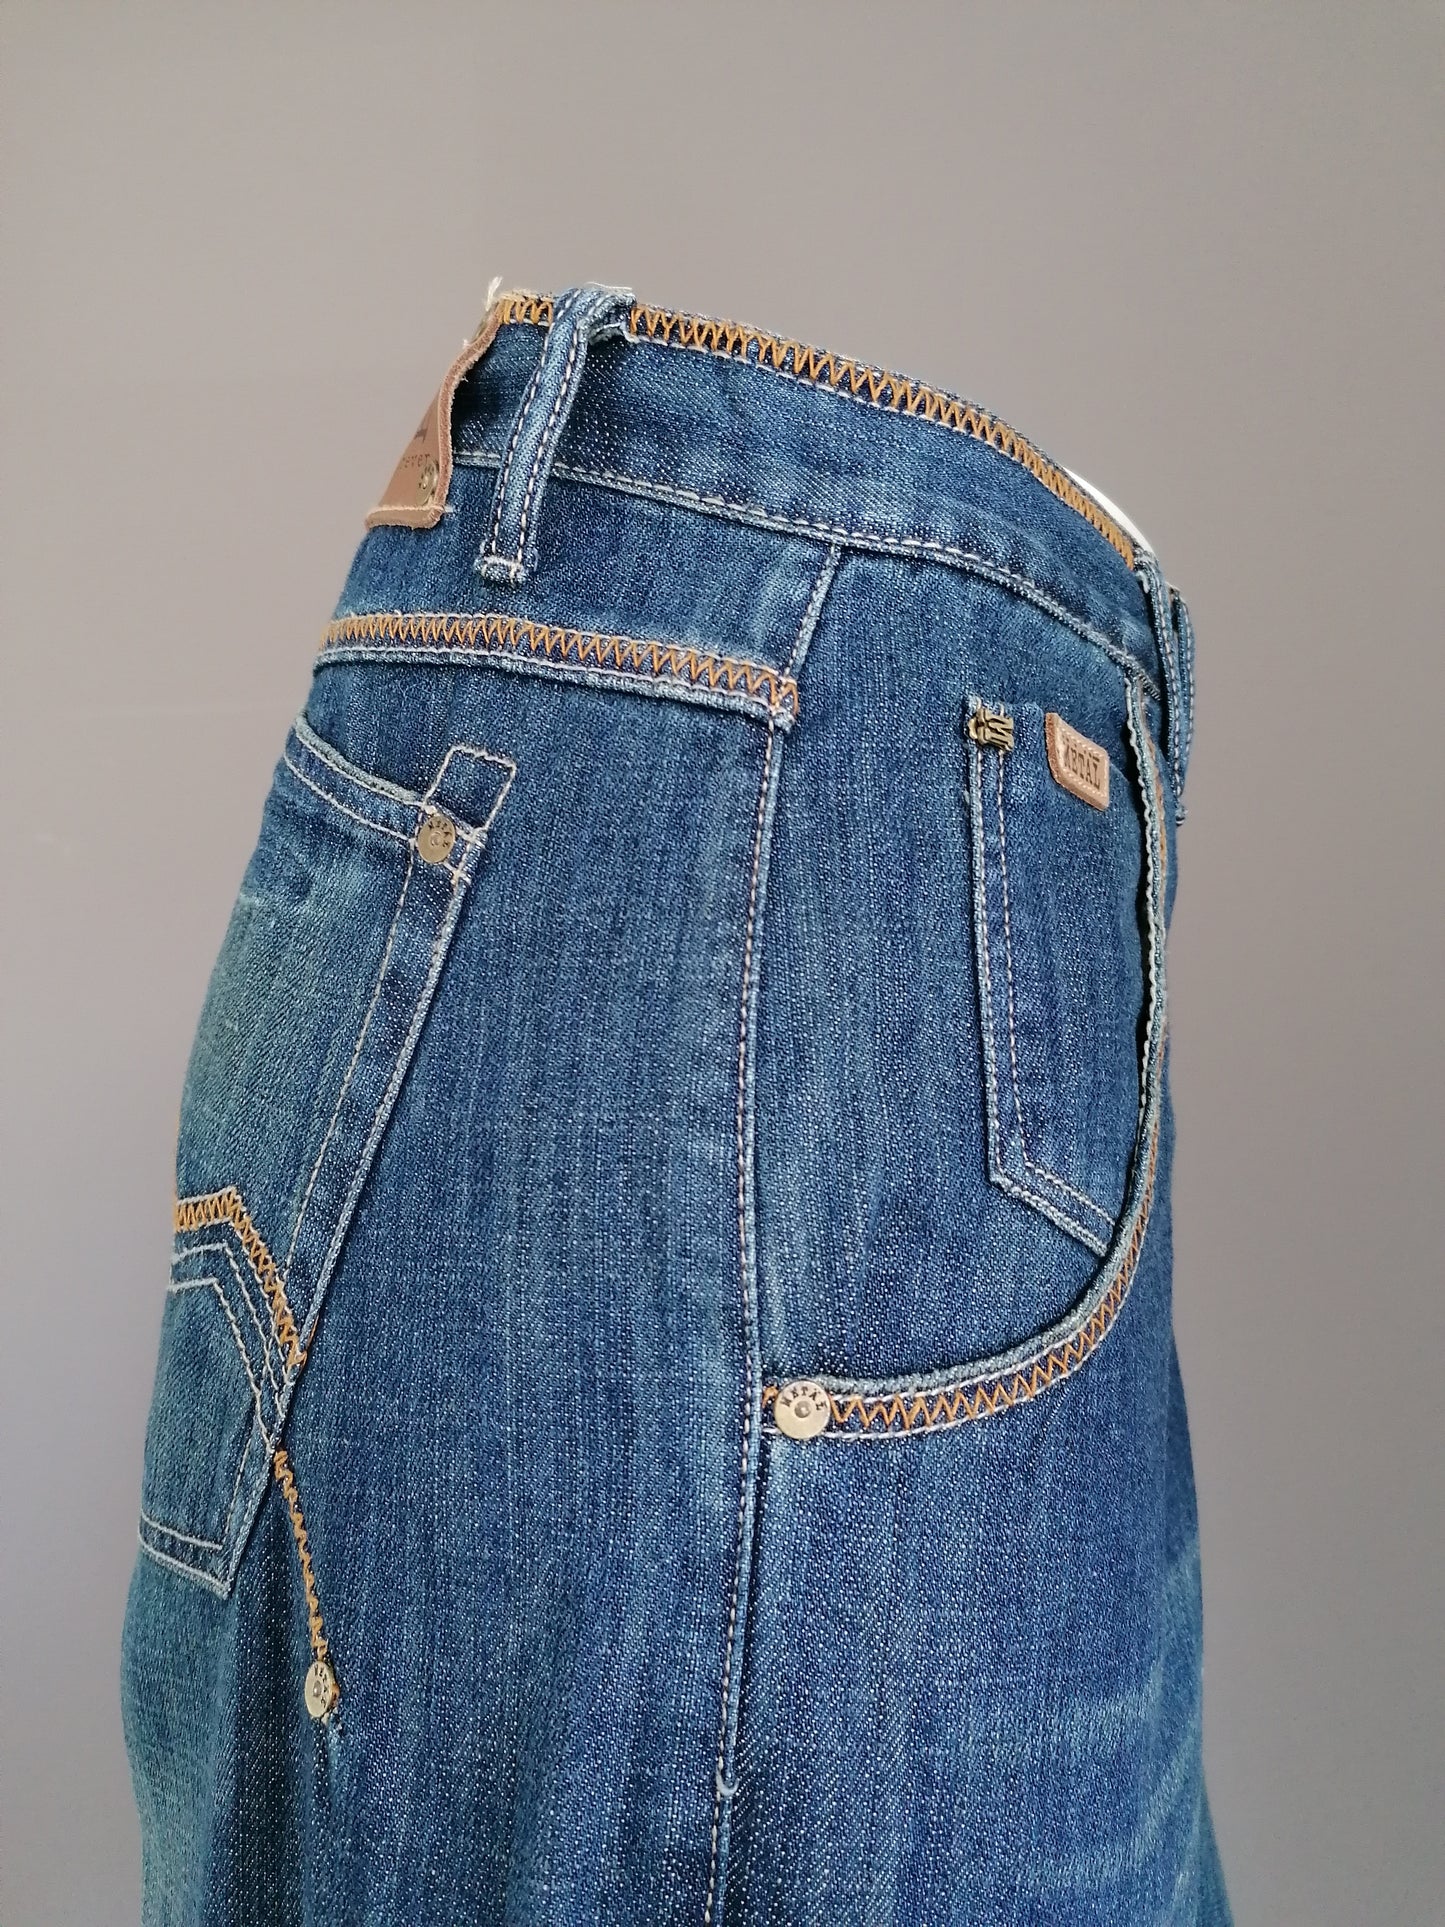 Metal Tough jeans. Blauw met Bruine stiksels. Maat W38 - L34. Wijde broekspijpen.